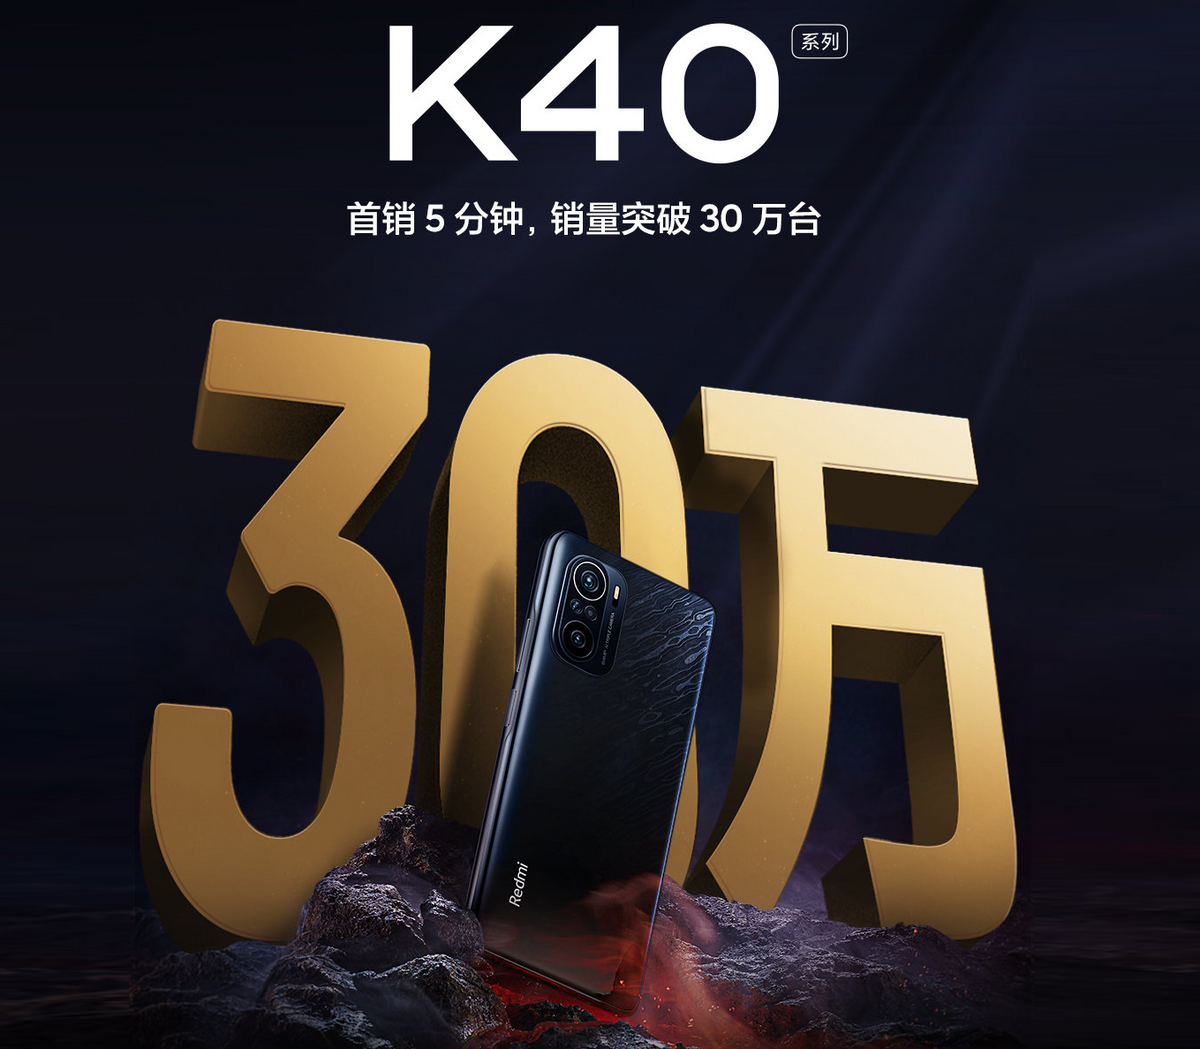 红米K40顶配版，如今终于回归“首发价”，2499元性价比很高！